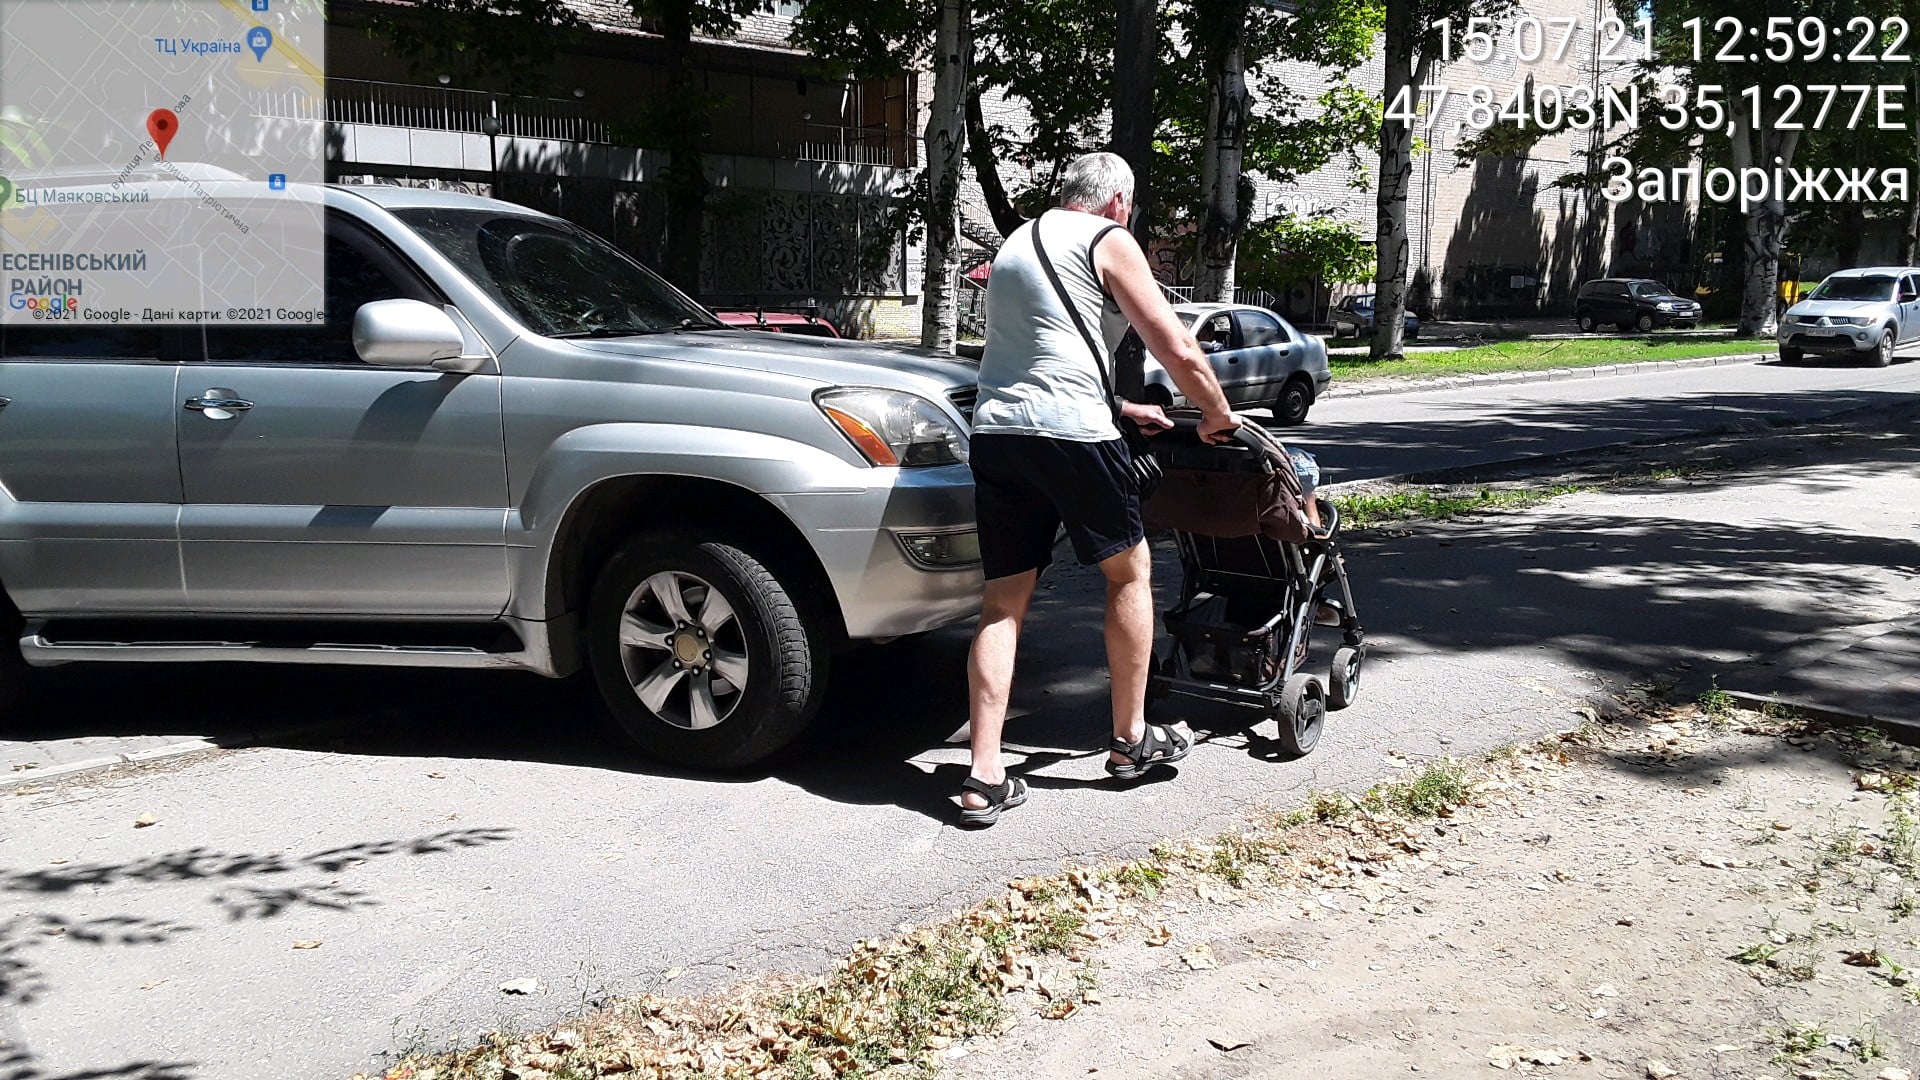 В Запорожье оштрафовали нарушителя на “Лексусе”, заблокировавшего проход по тротуару (ФОТО)